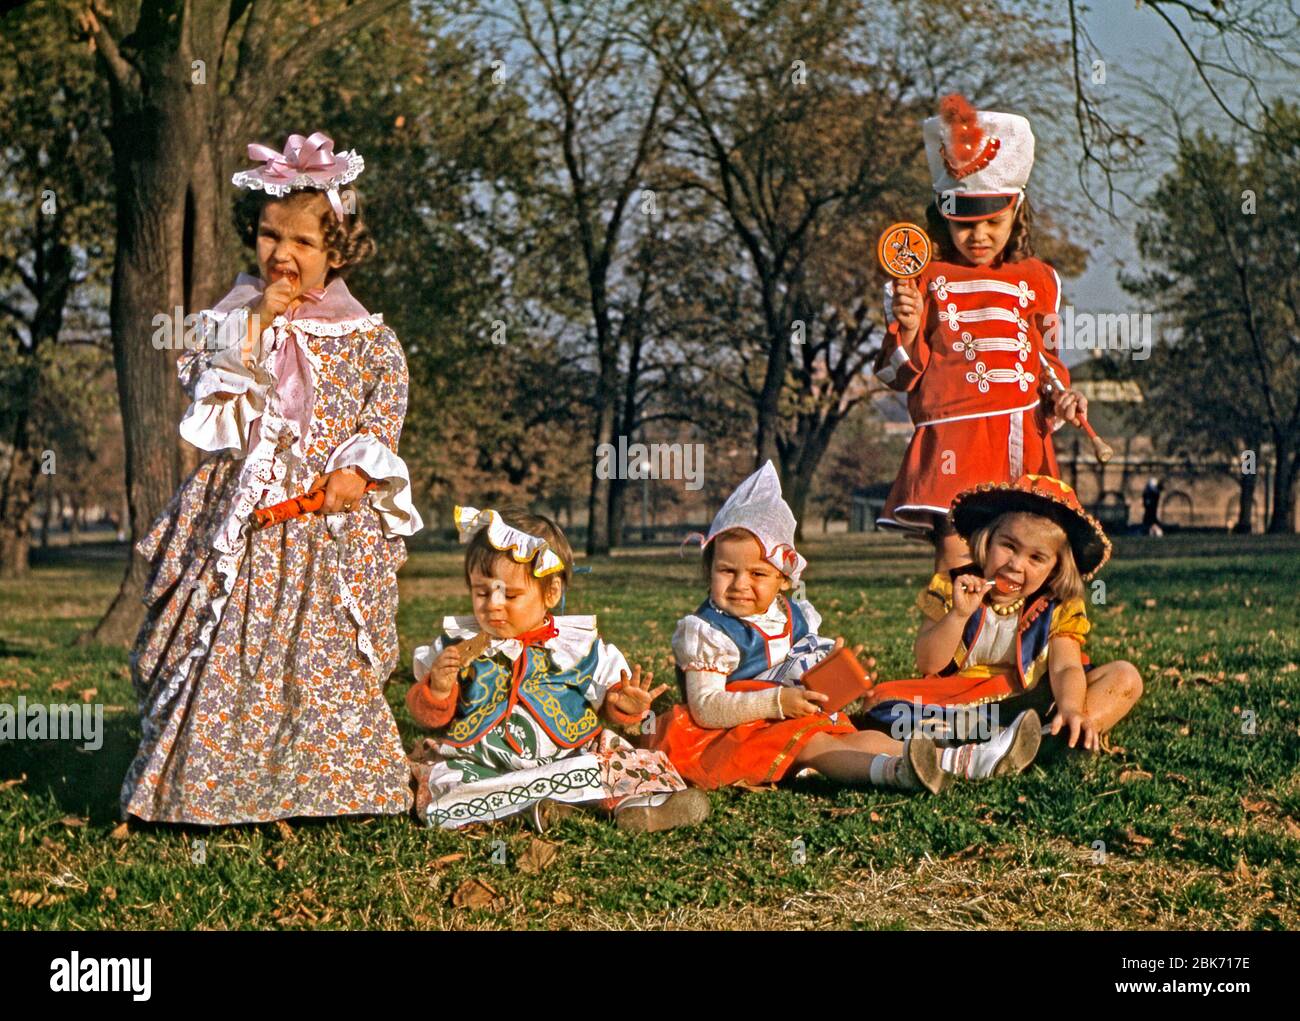 Fünf Mädchen in einem Park in Kostümen an Halloween, USA 1955. Drei Mädchen haben orangefarbene Eiszapfen (Lollies) – zwei lecken sie, während die dritte (in einer Marschkapelle-Uniform stehend) ihre hält und das Bild einer Hexe darauf zeigt. Stockfoto